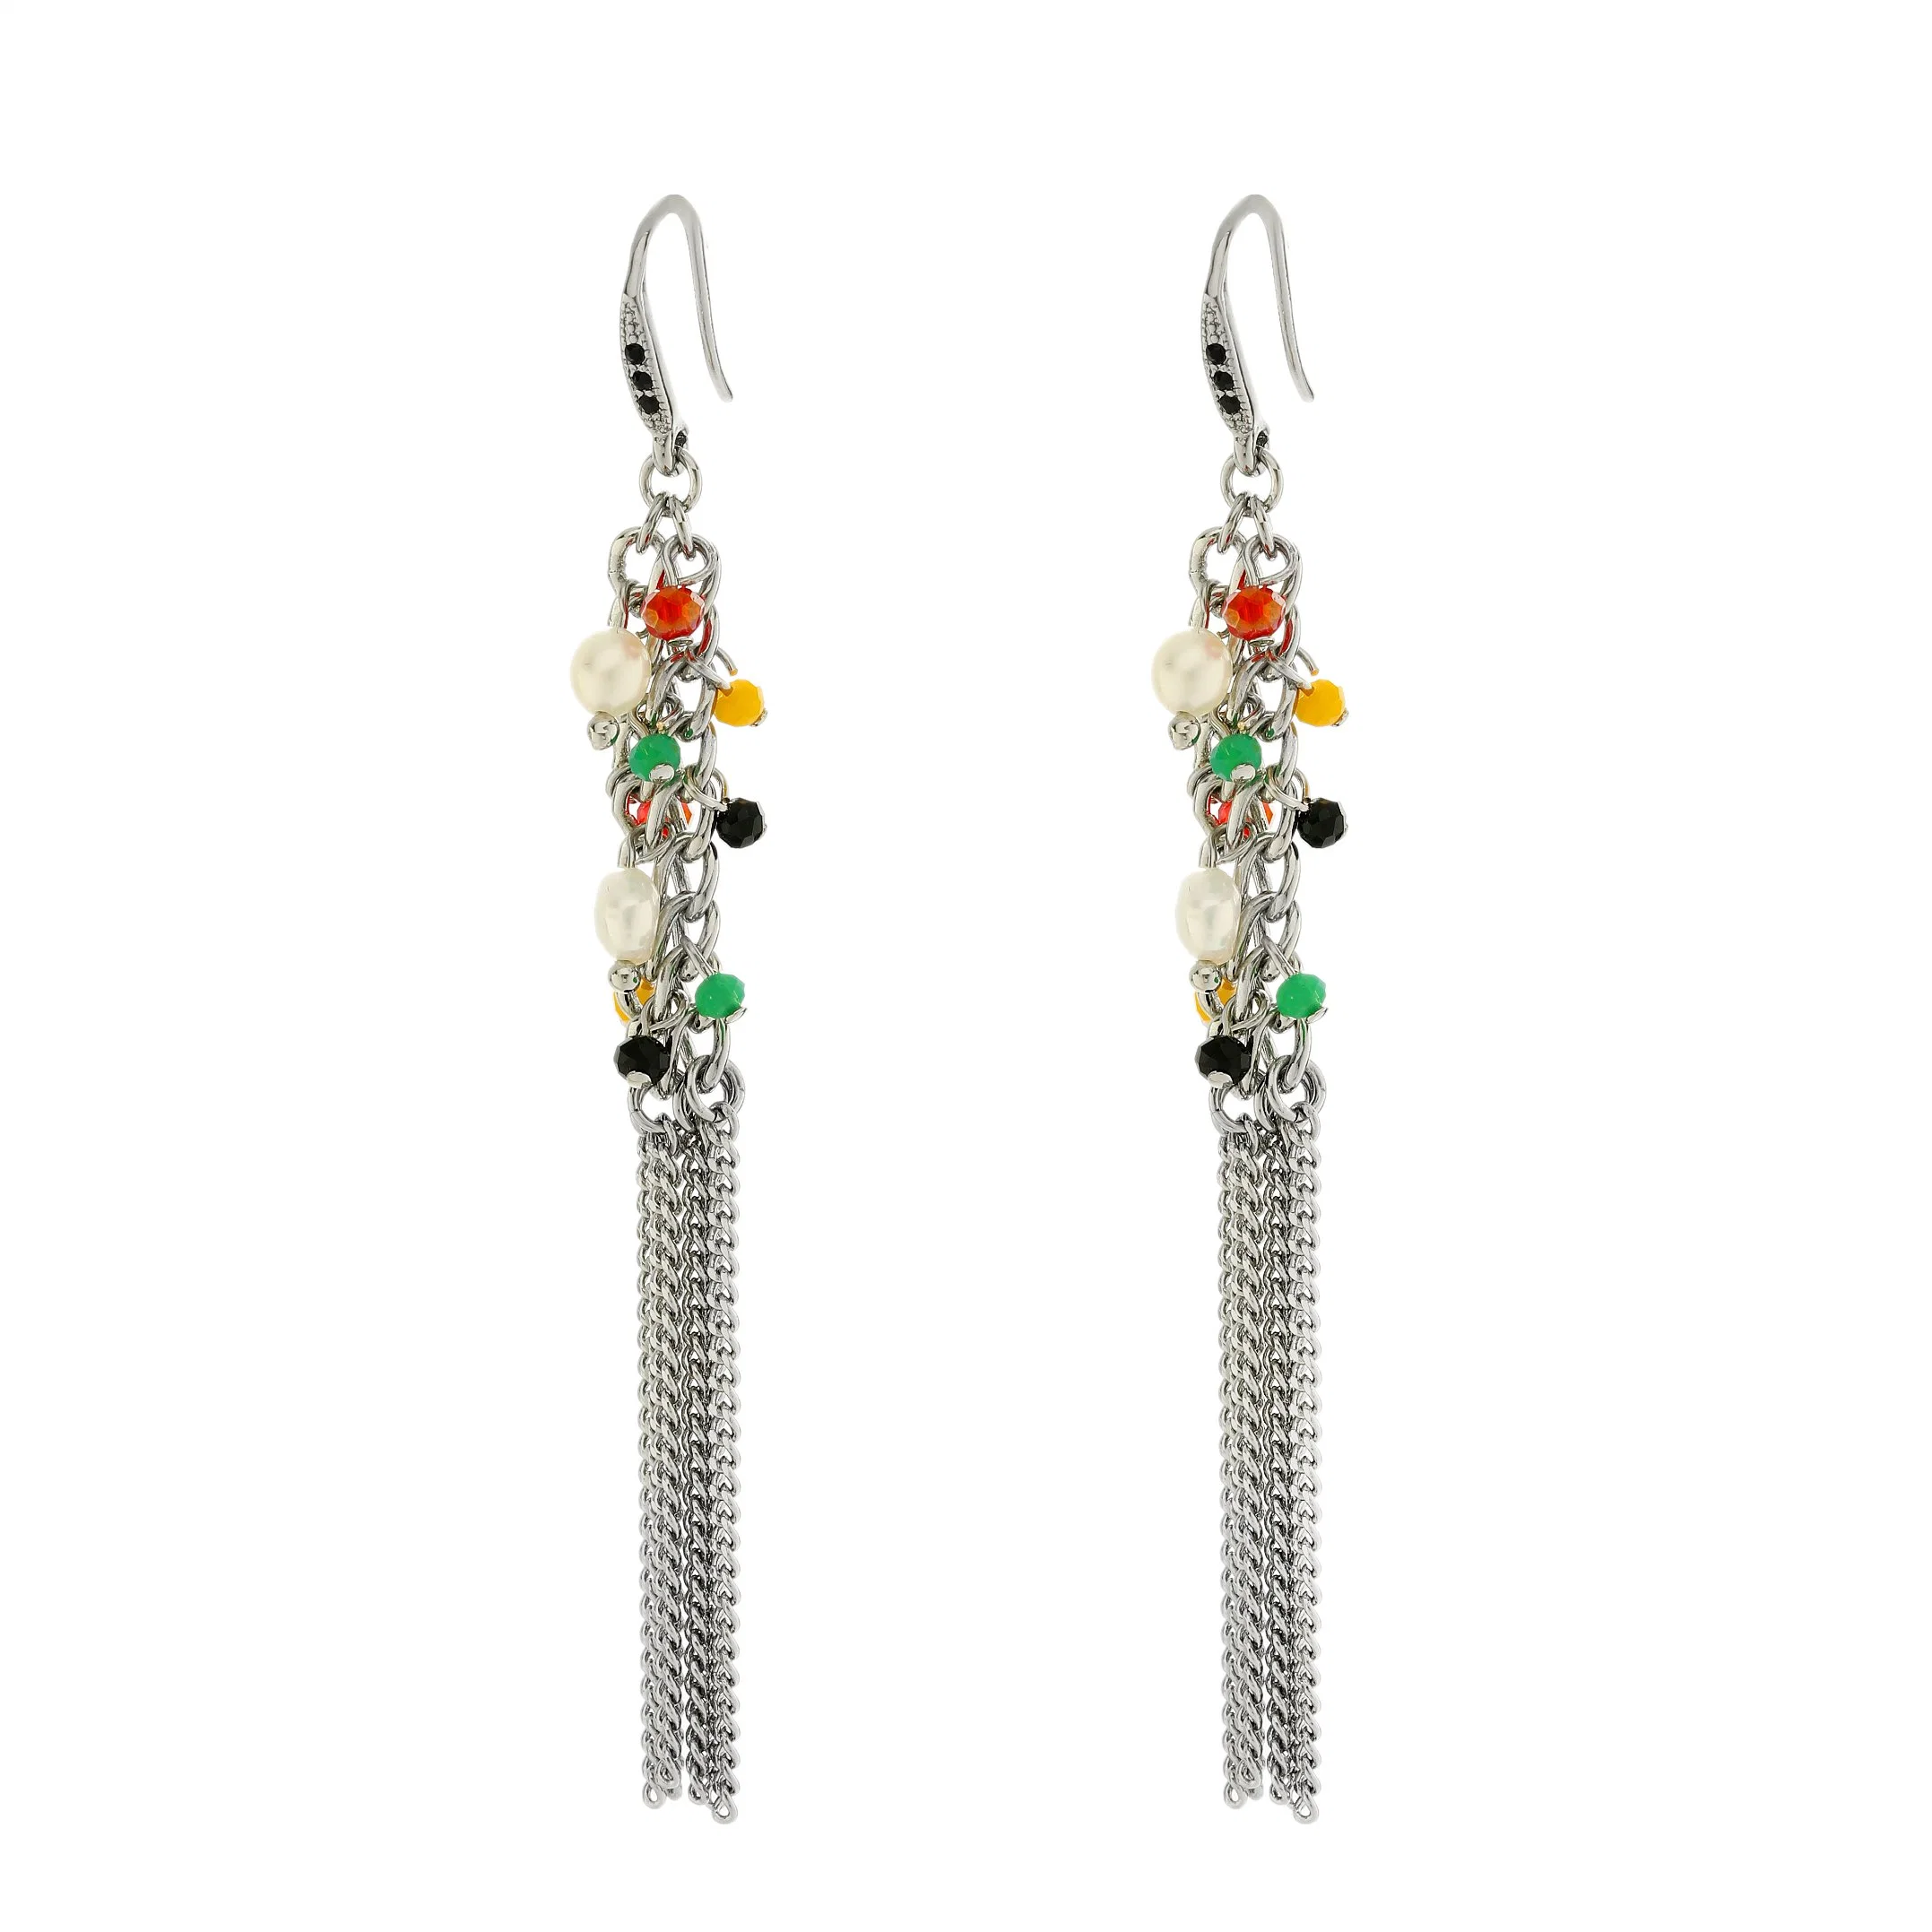 Fashion Girl Tassel Earring Personality Long Tassel Chain Women Colorful Earrings Jewelry Accessories